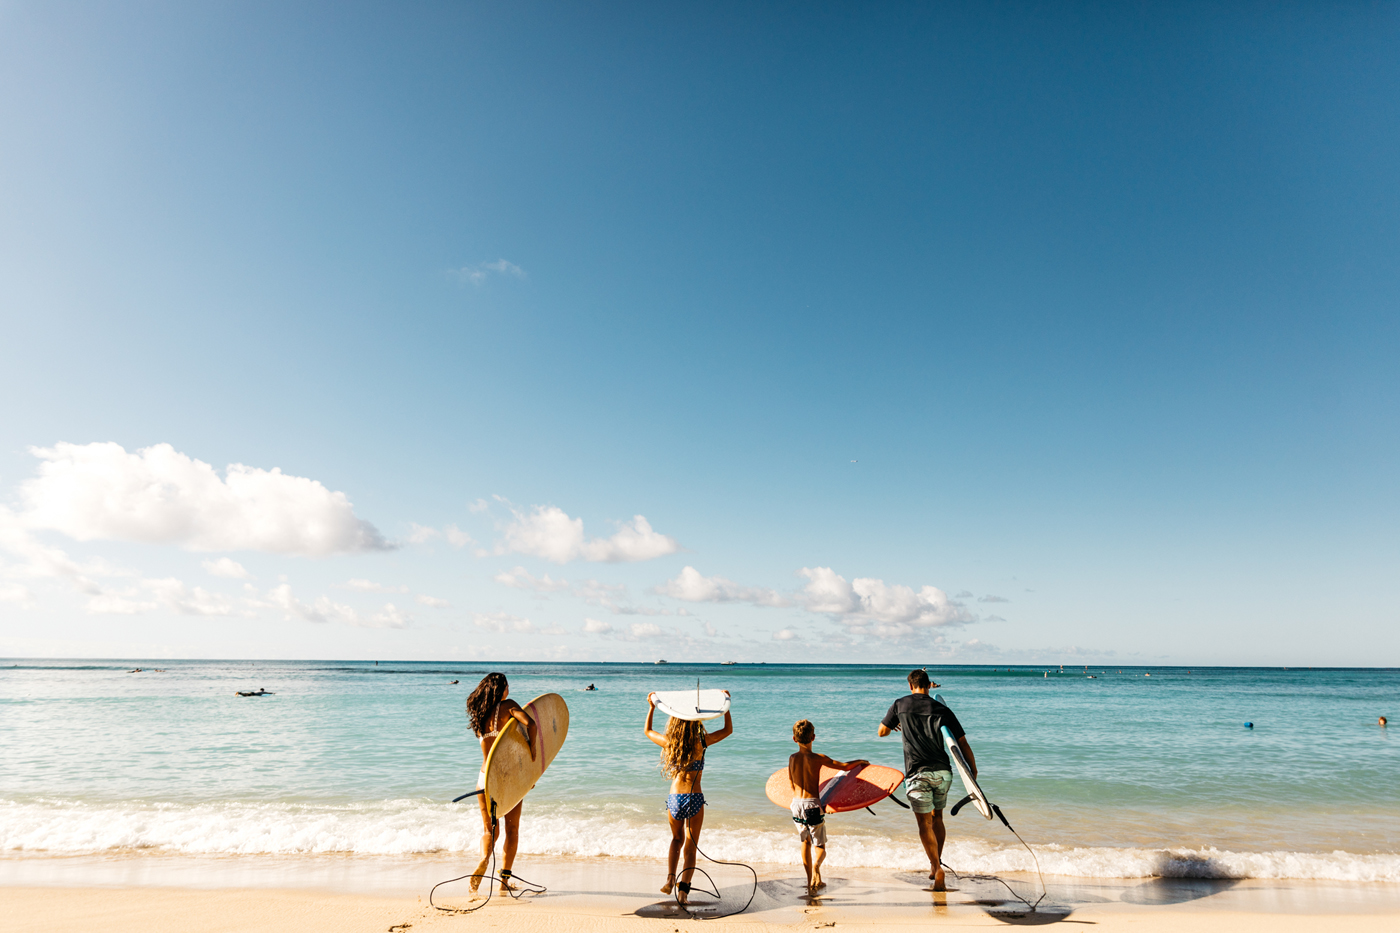 海の安全 ハワイのビーチを楽しむために Malama Hawaii マラマハワイ ハワイ州レスポンシブルツーリズム情報サイト